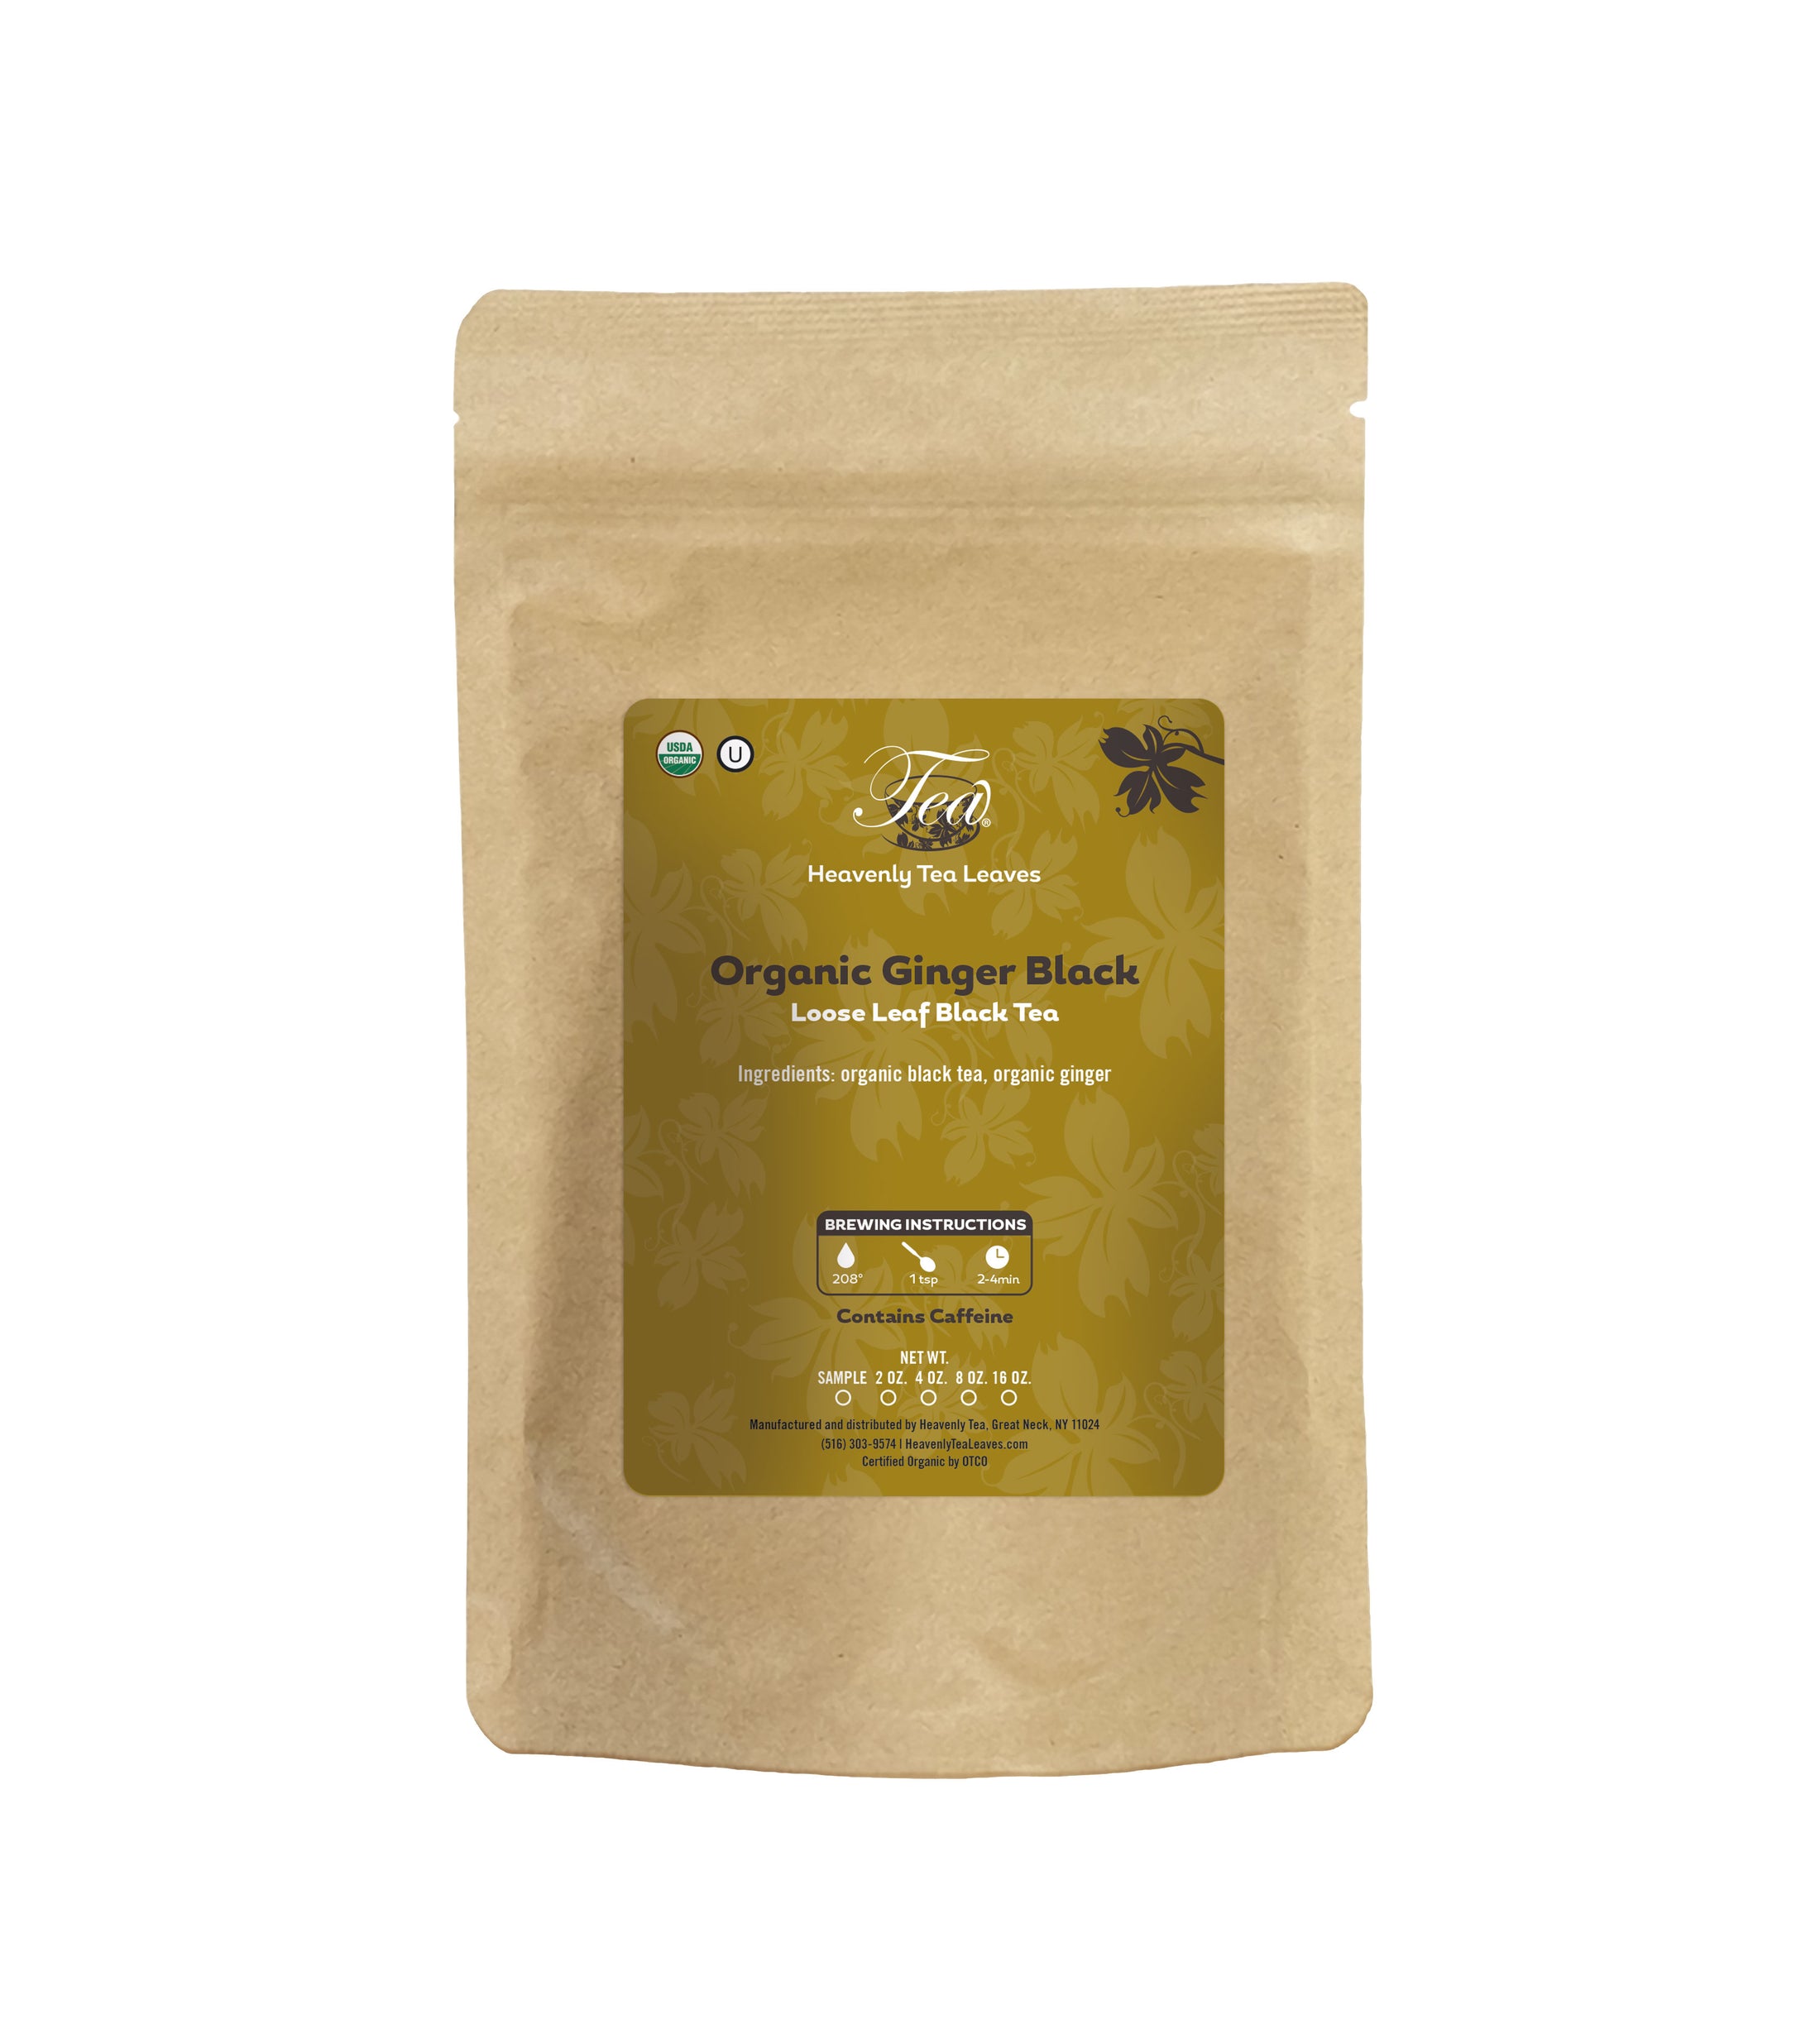 Organic Ginger Black - Premium Loose Leaf Black Tea | Heavenly Tea Leaves